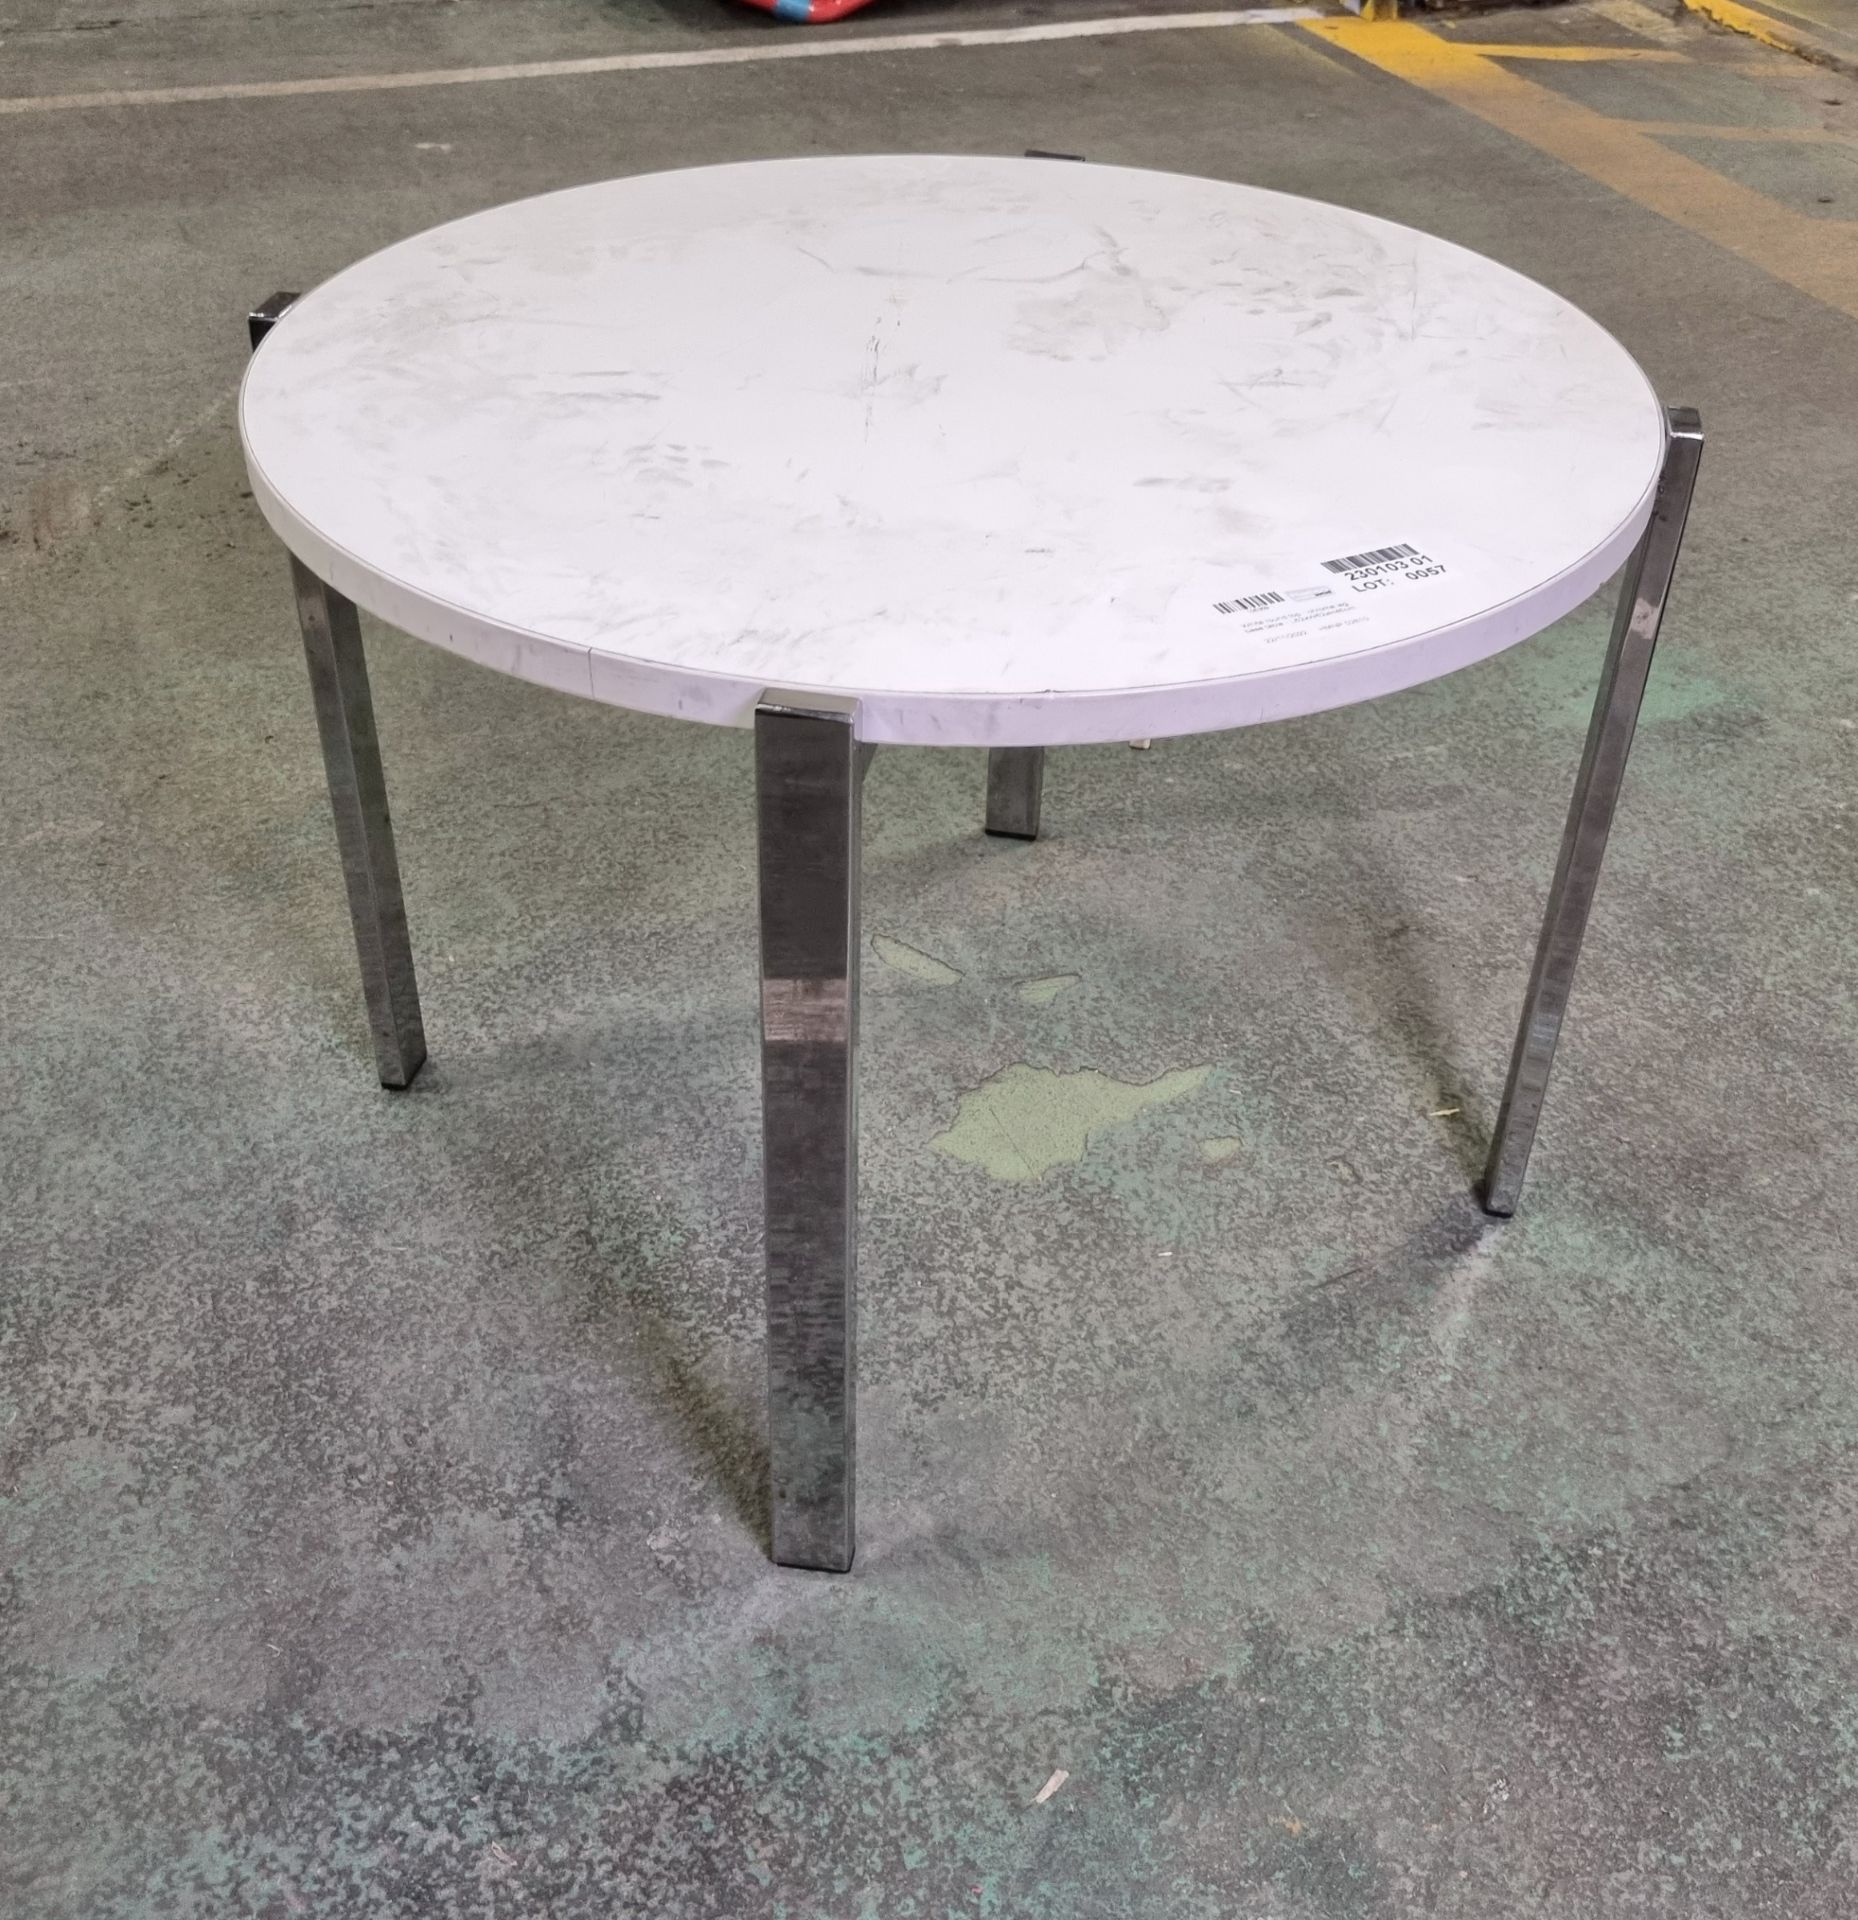 White round top - chrome leg base table - 62cm dia x H45cm